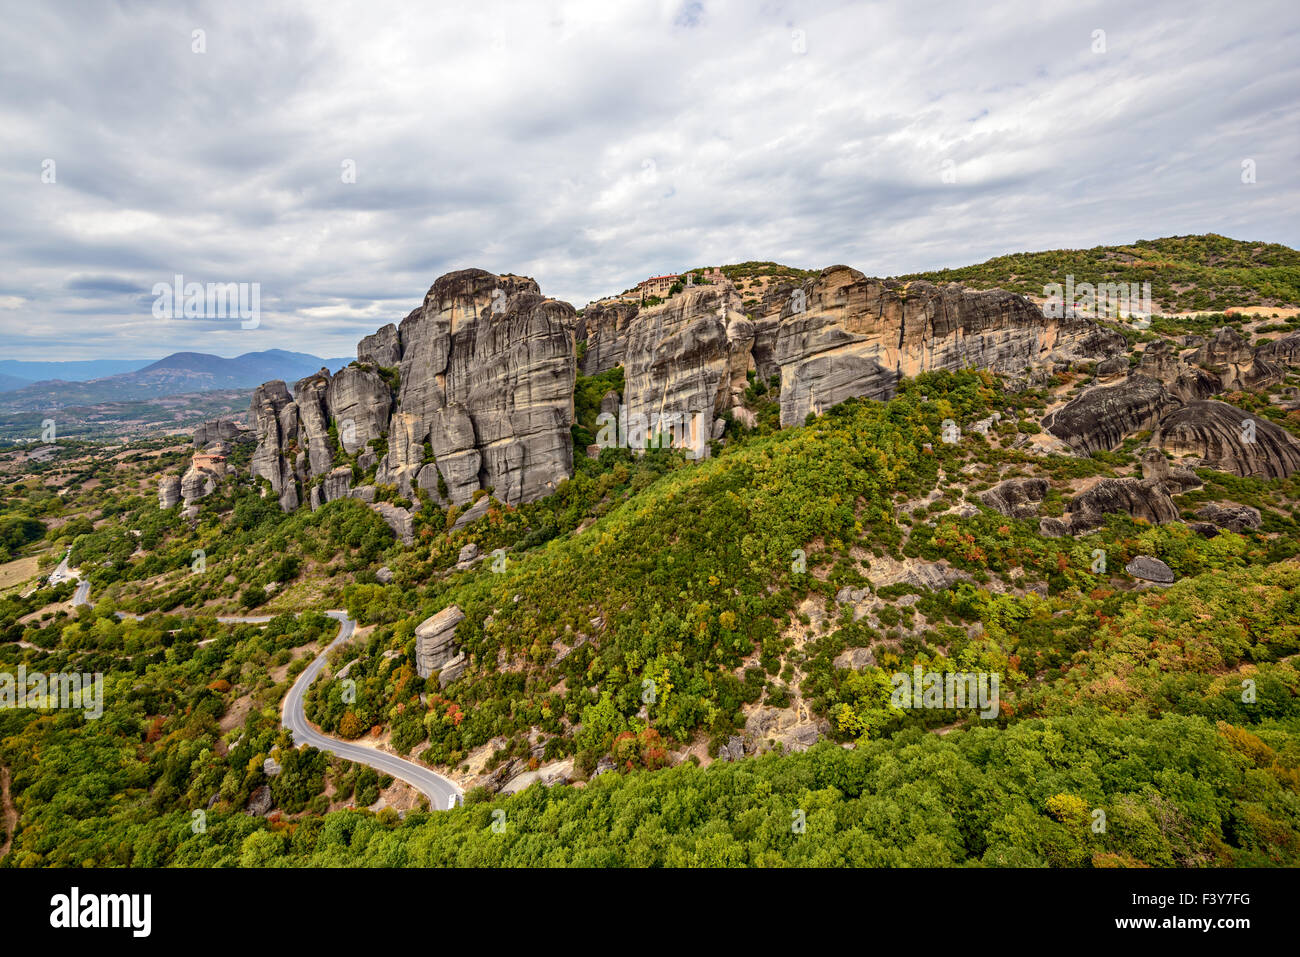 Meteora rocks in Greece Stock Photo